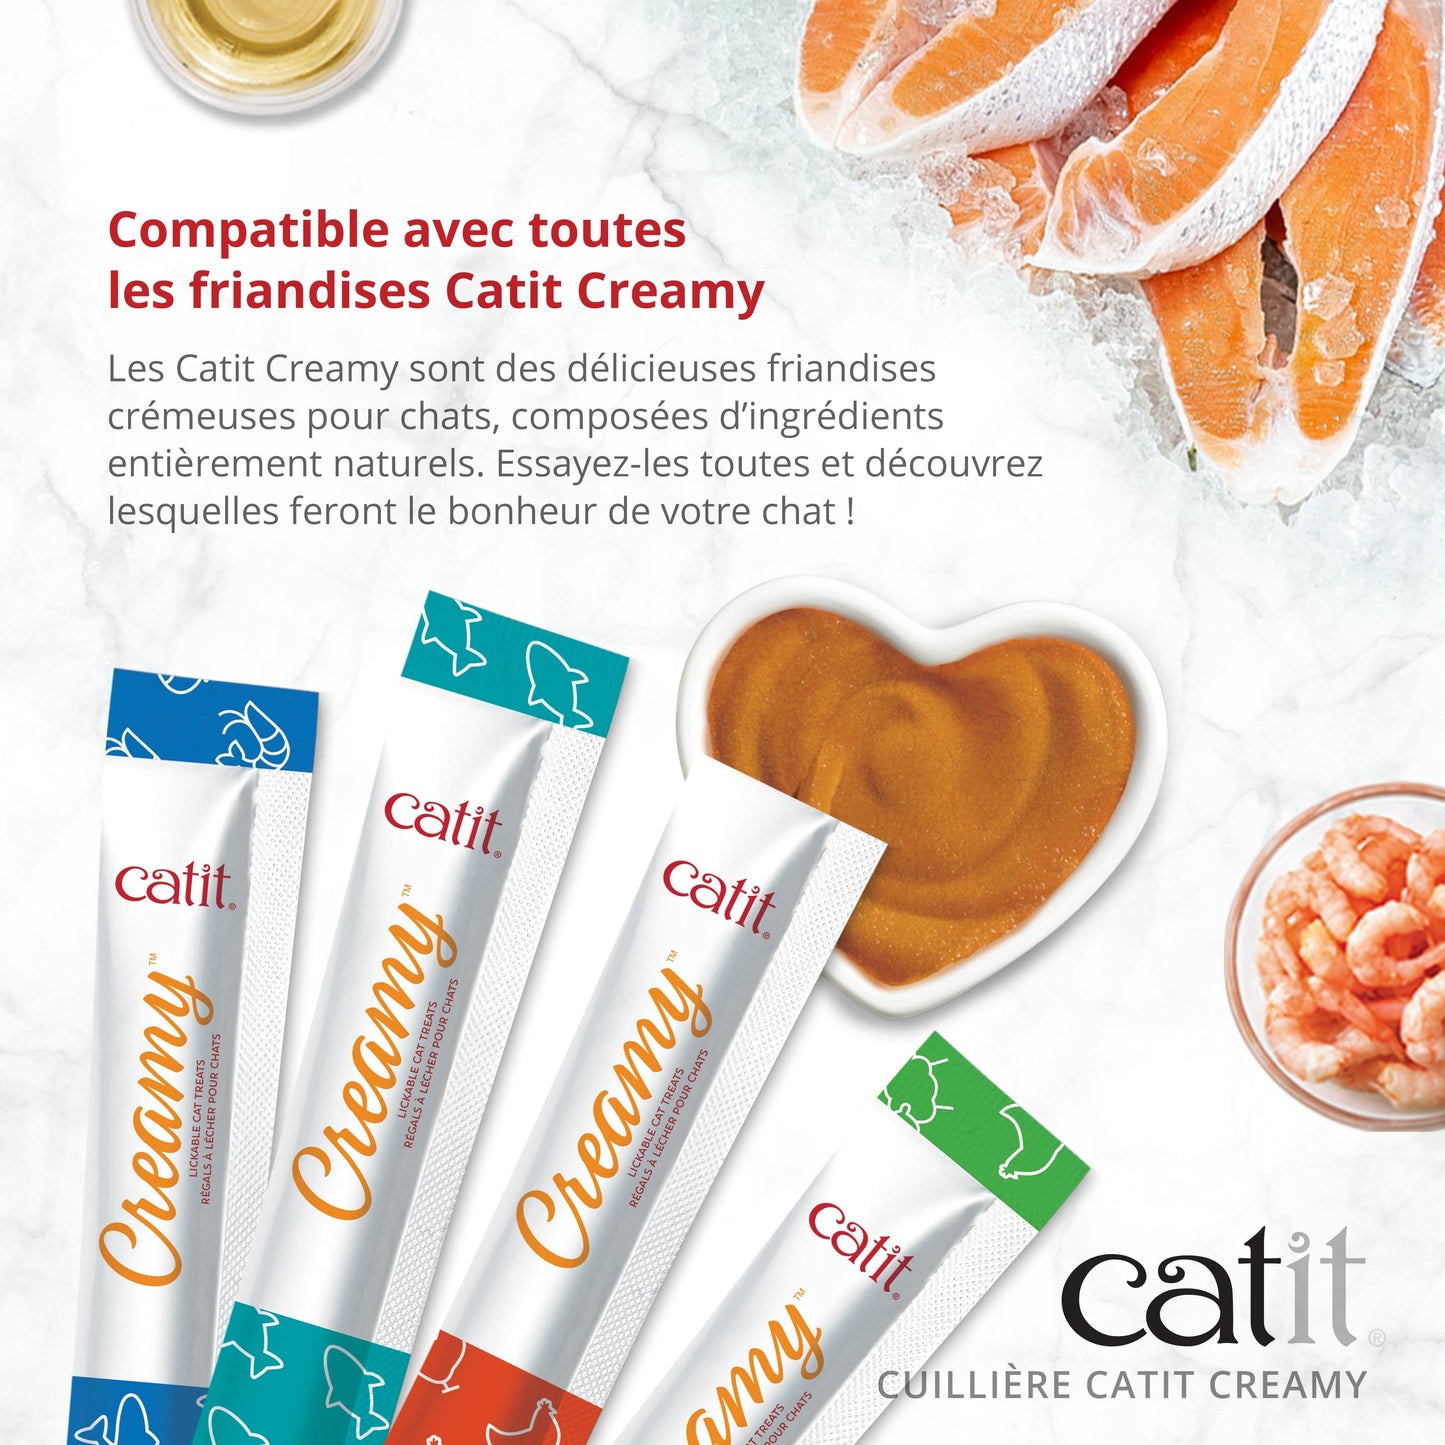 Cuillière Catit Creamy